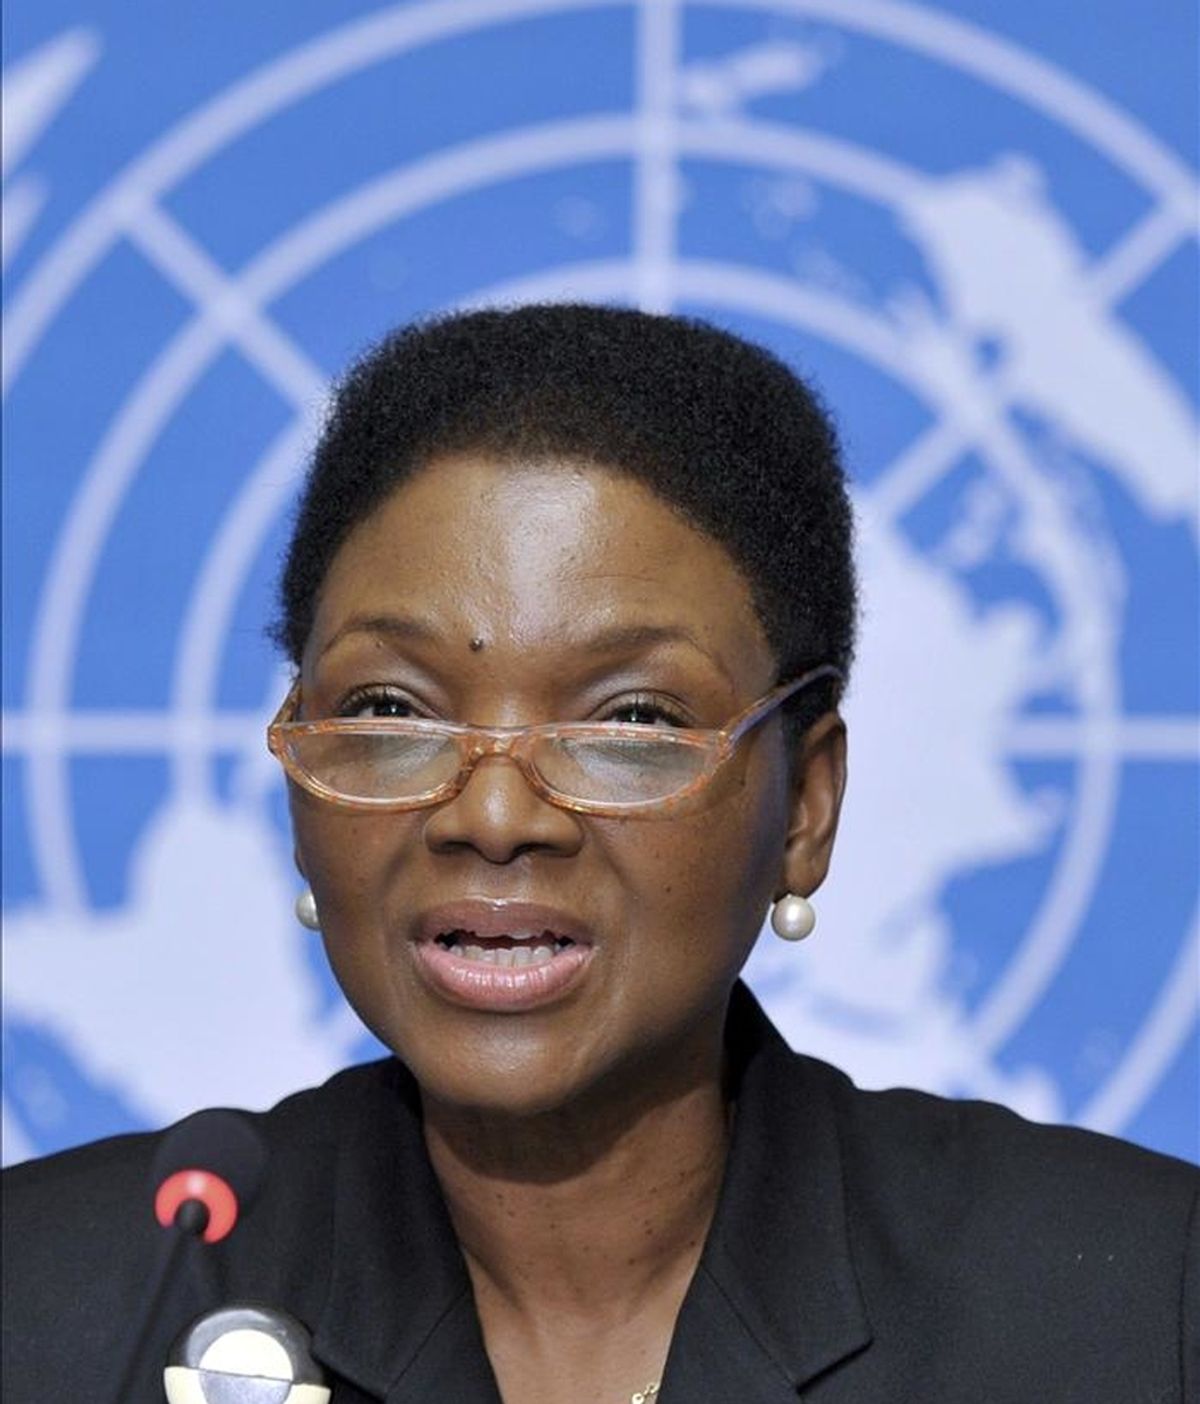 La subsecretaria general de la ONU para Asuntos Humanitarios, Valerie Amos, dijo: "No sabemos todavía la magnitud total de las atrocidades cometidas en el país, pero está claro que se han cometido graves violaciones de derechos humanos". EFE/Archivo